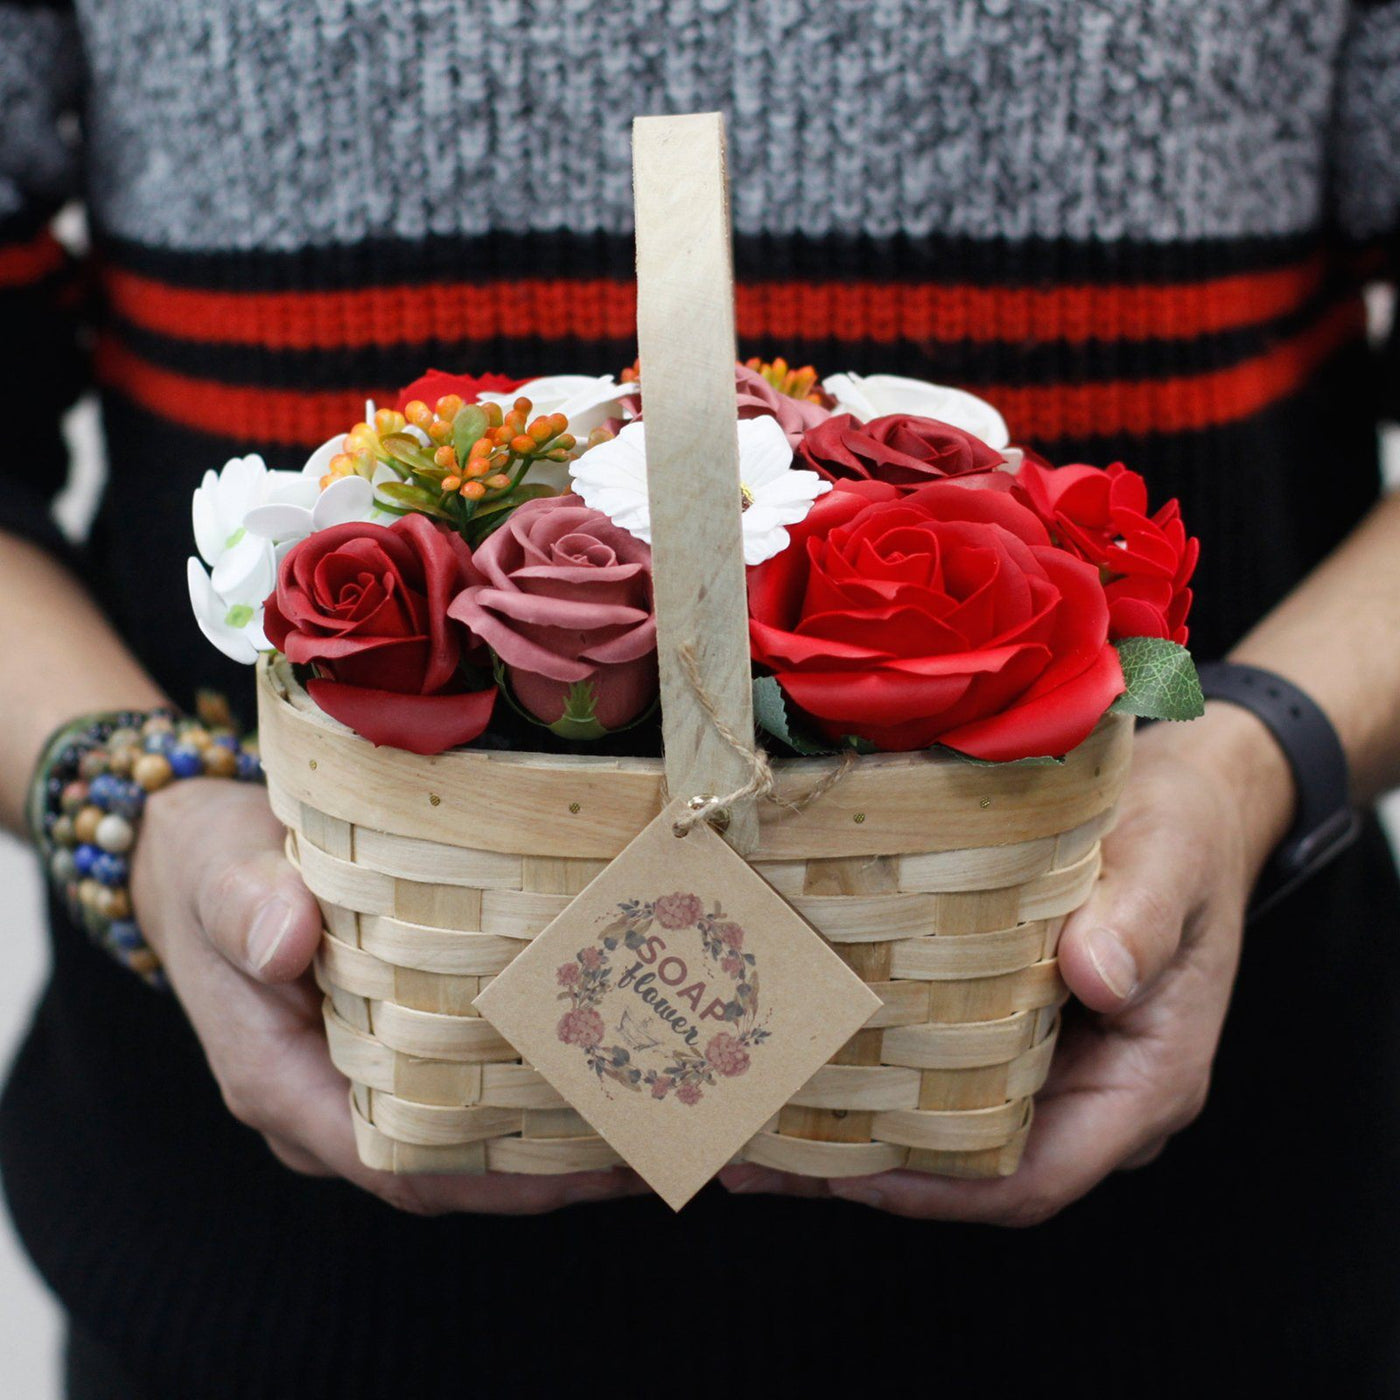 Large Luxury Red Body Soap Flower Gift Bouquet in Wicker Basket.